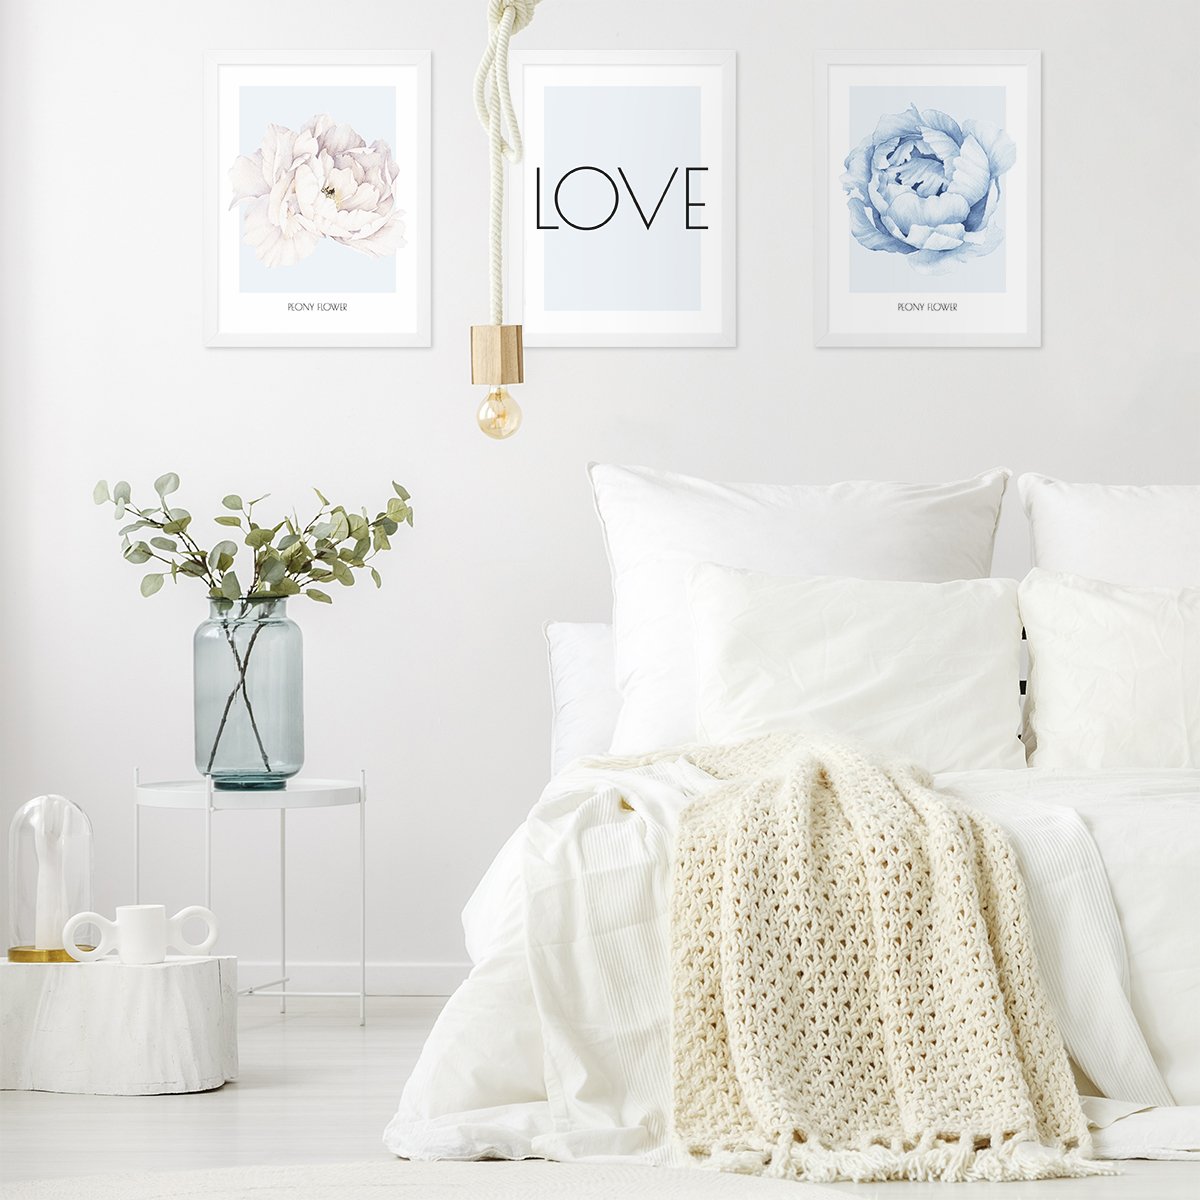 Plakaty do sypialni z kwiatami piwonii i napisem love w białych ramkach powieszone nad łóżkiem - zestaw trzech plakatów z ramkami#kolor_niebieski